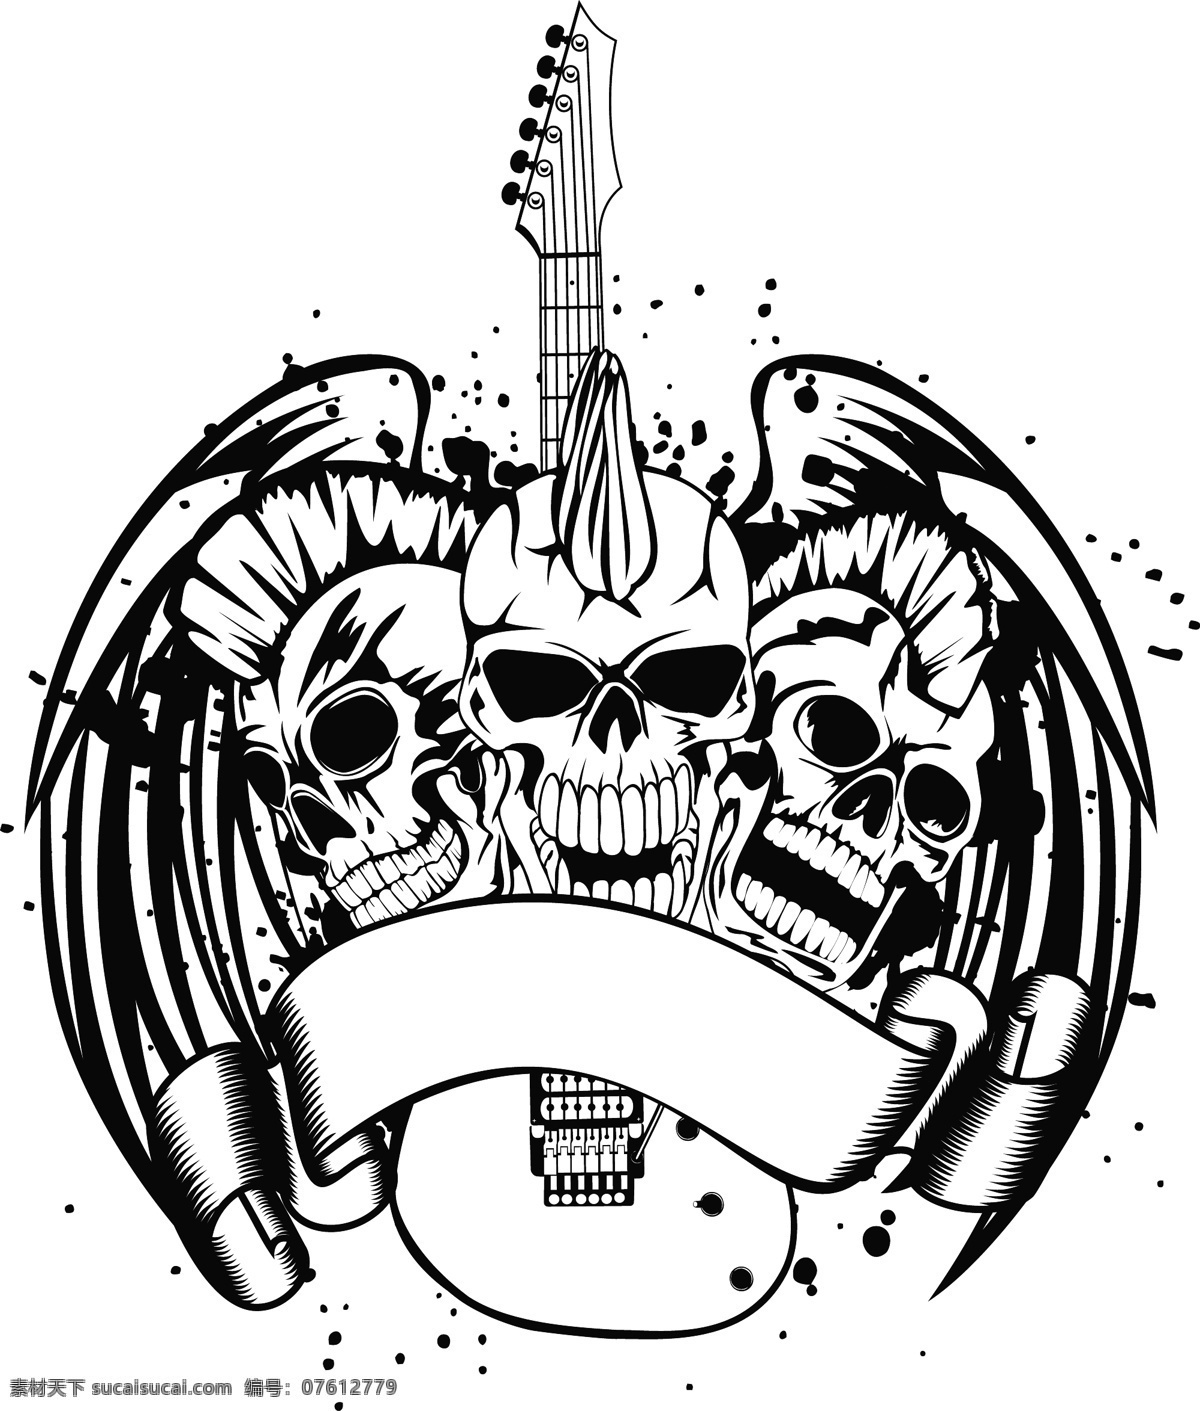 骷髅 吉他 矢量图 麦克风 翅膀 双翼 吉他乐器 摇滚音乐 音乐海报 影音娱乐 生活百科 矢量素材 白色